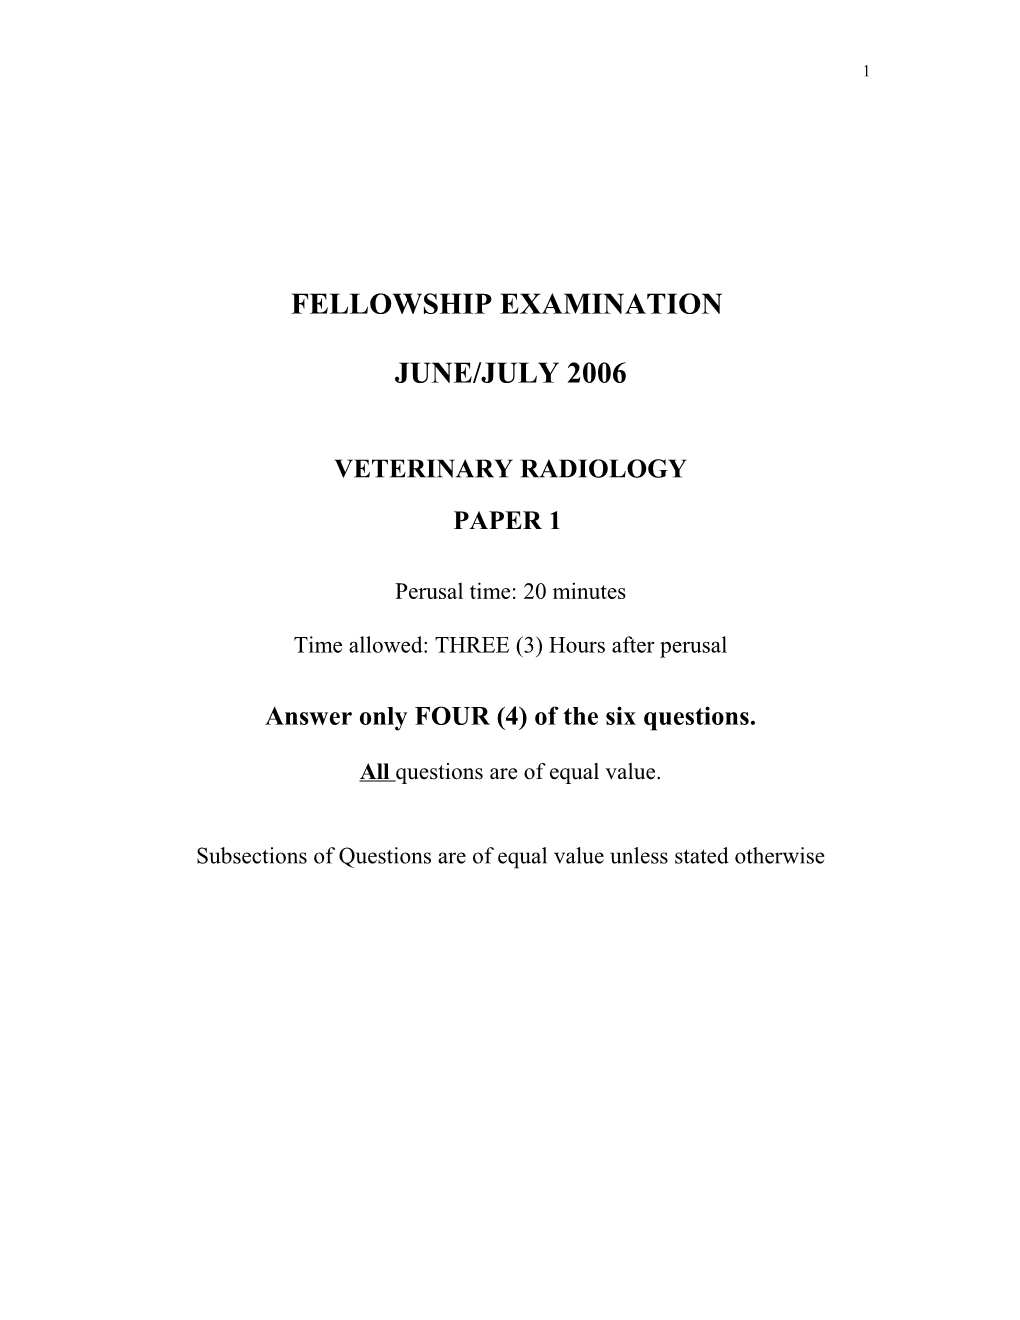 Fellowship Examination in Veterinary Radiology 2001